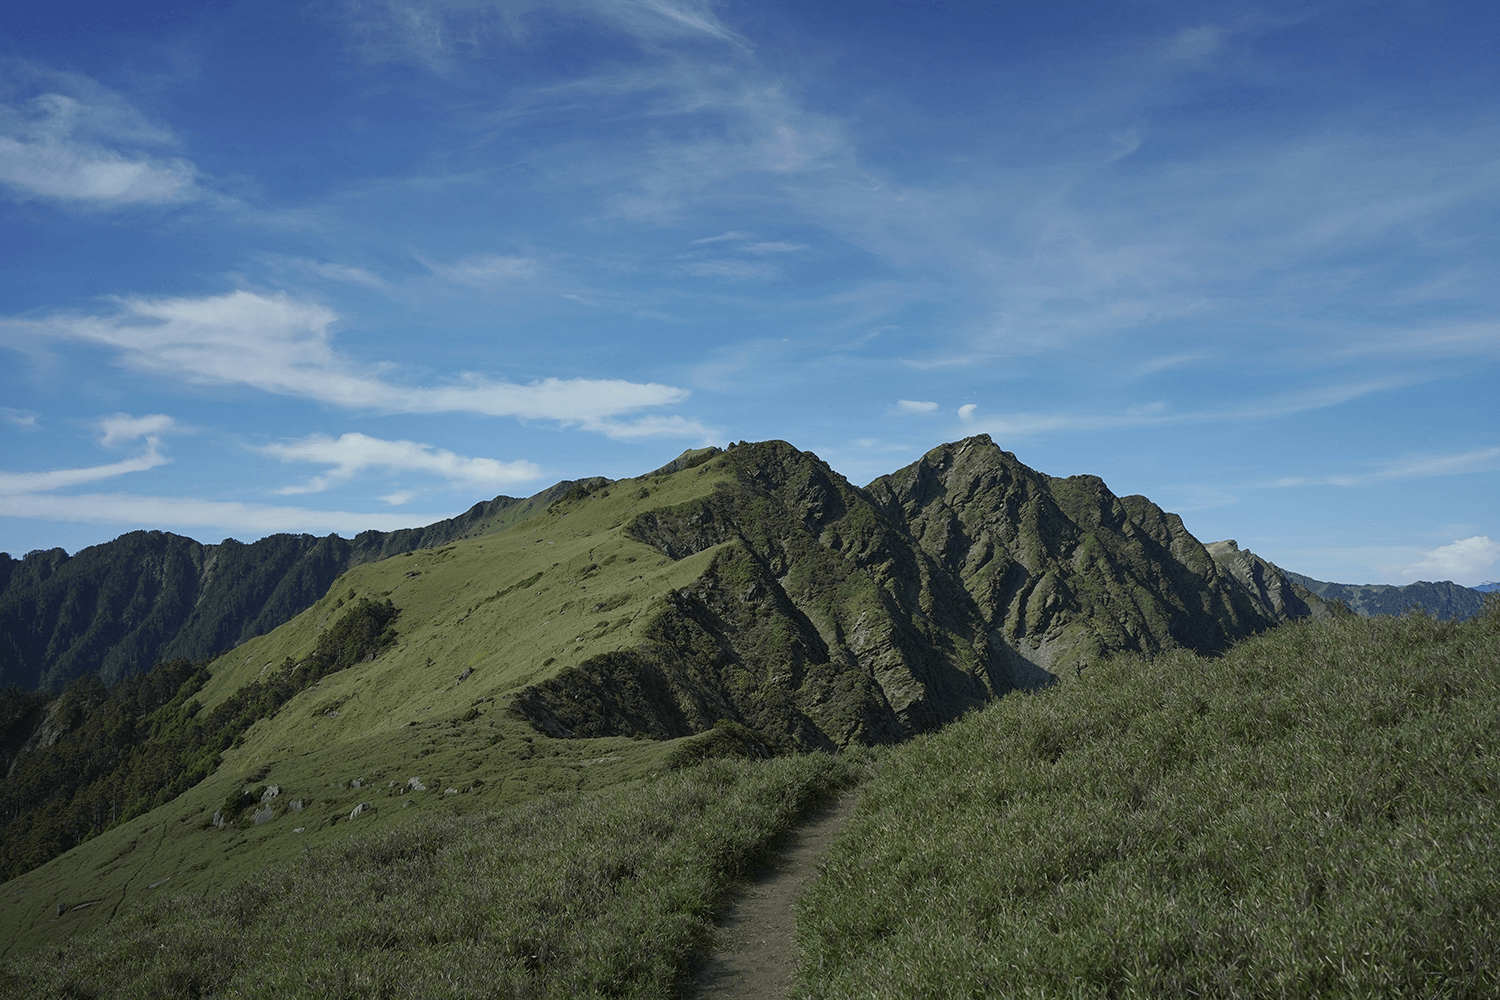 Mount Qilai